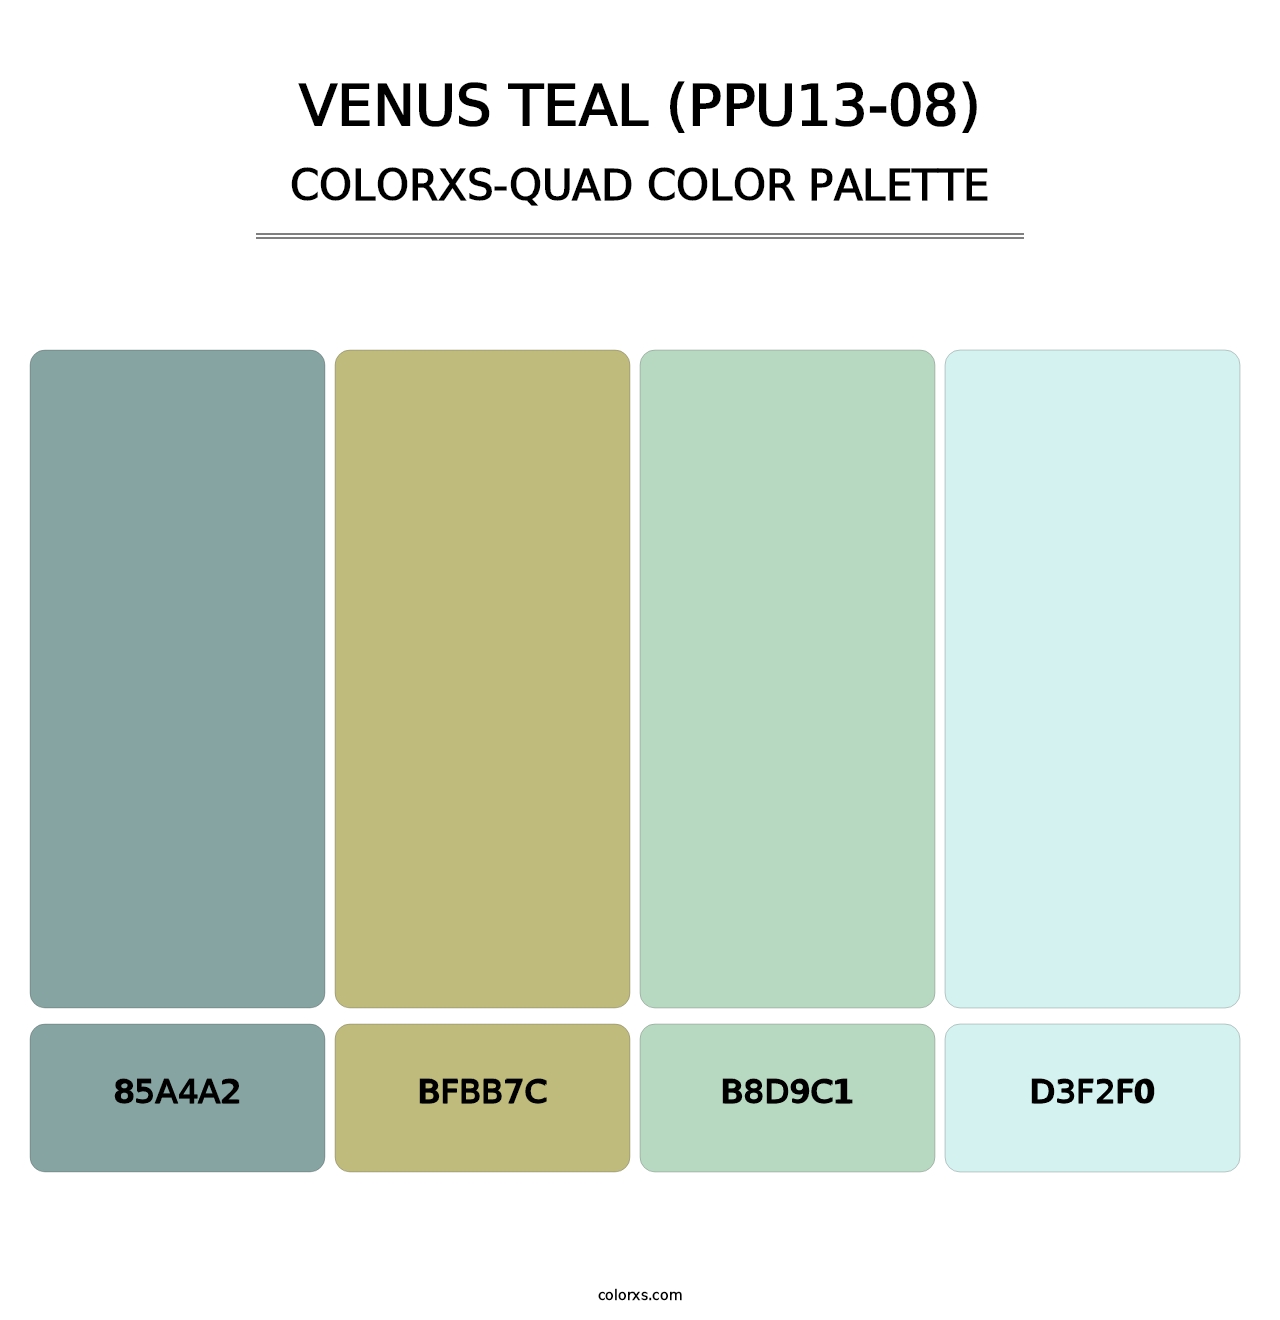 Venus Teal (PPU13-08) - Colorxs Quad Palette